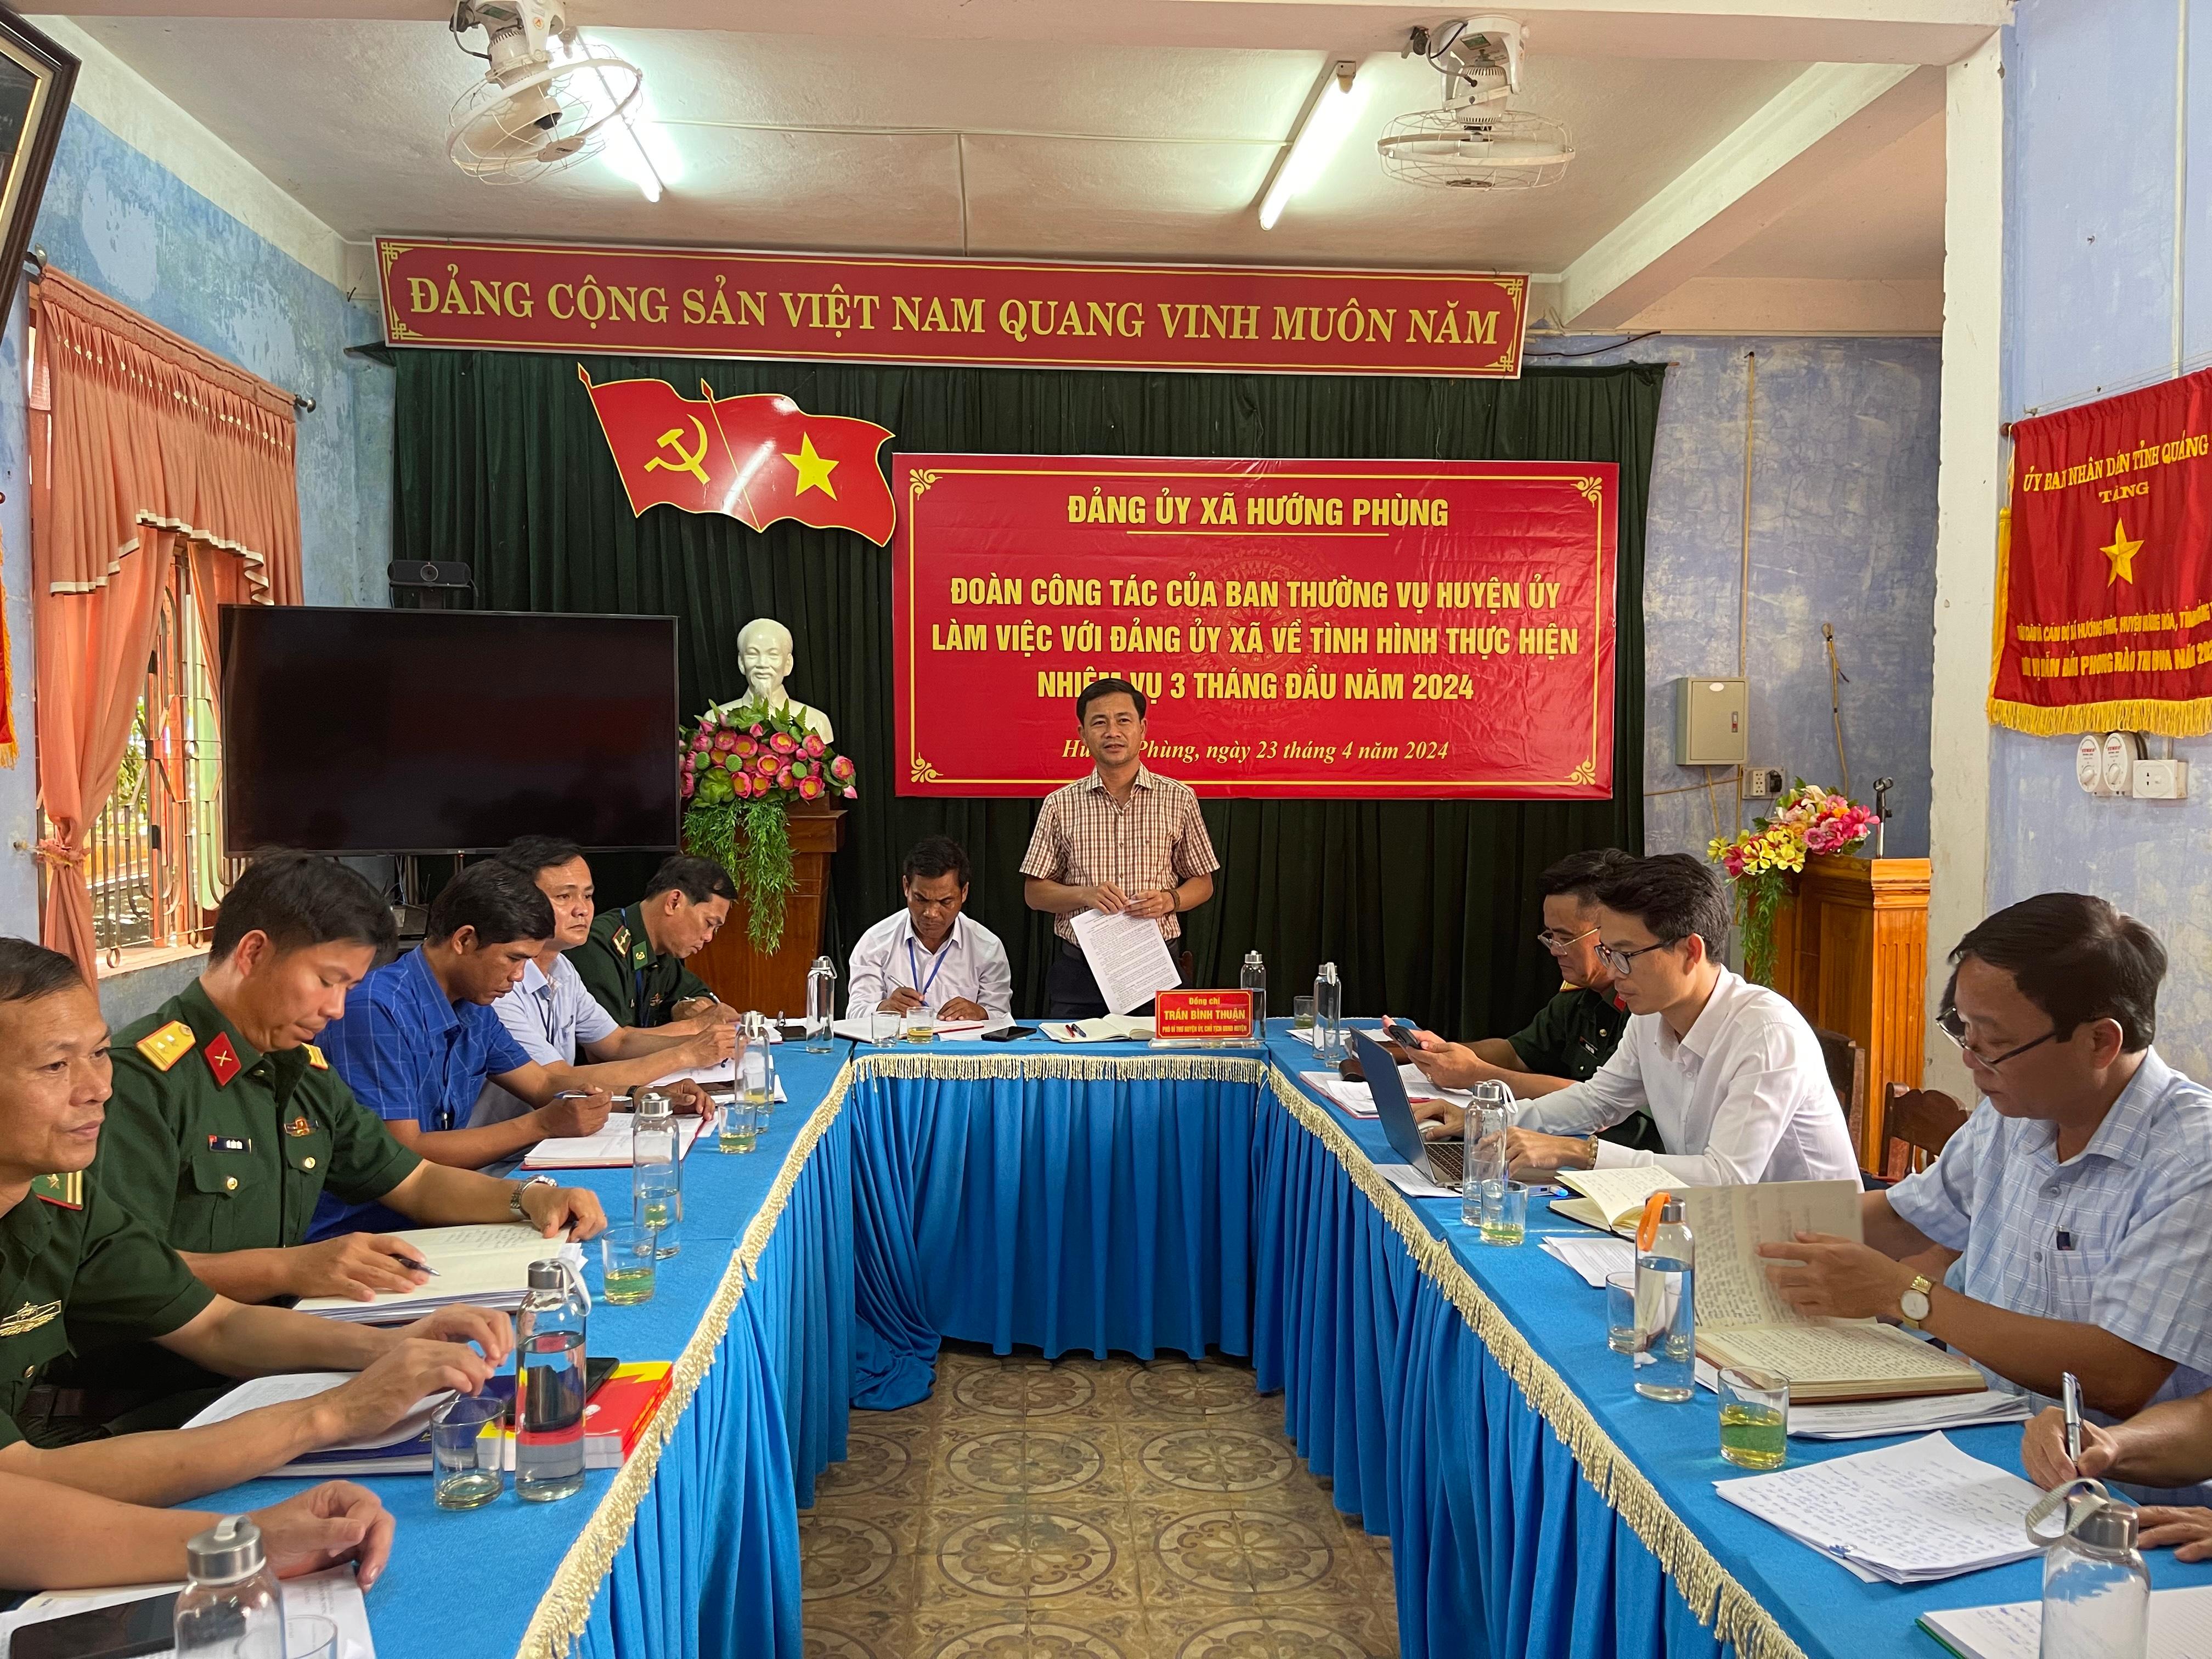 Đoàn công tác của Ban Thường vụ Huyện ủy làm việc với Đảng ủy xã Hướng Phùng